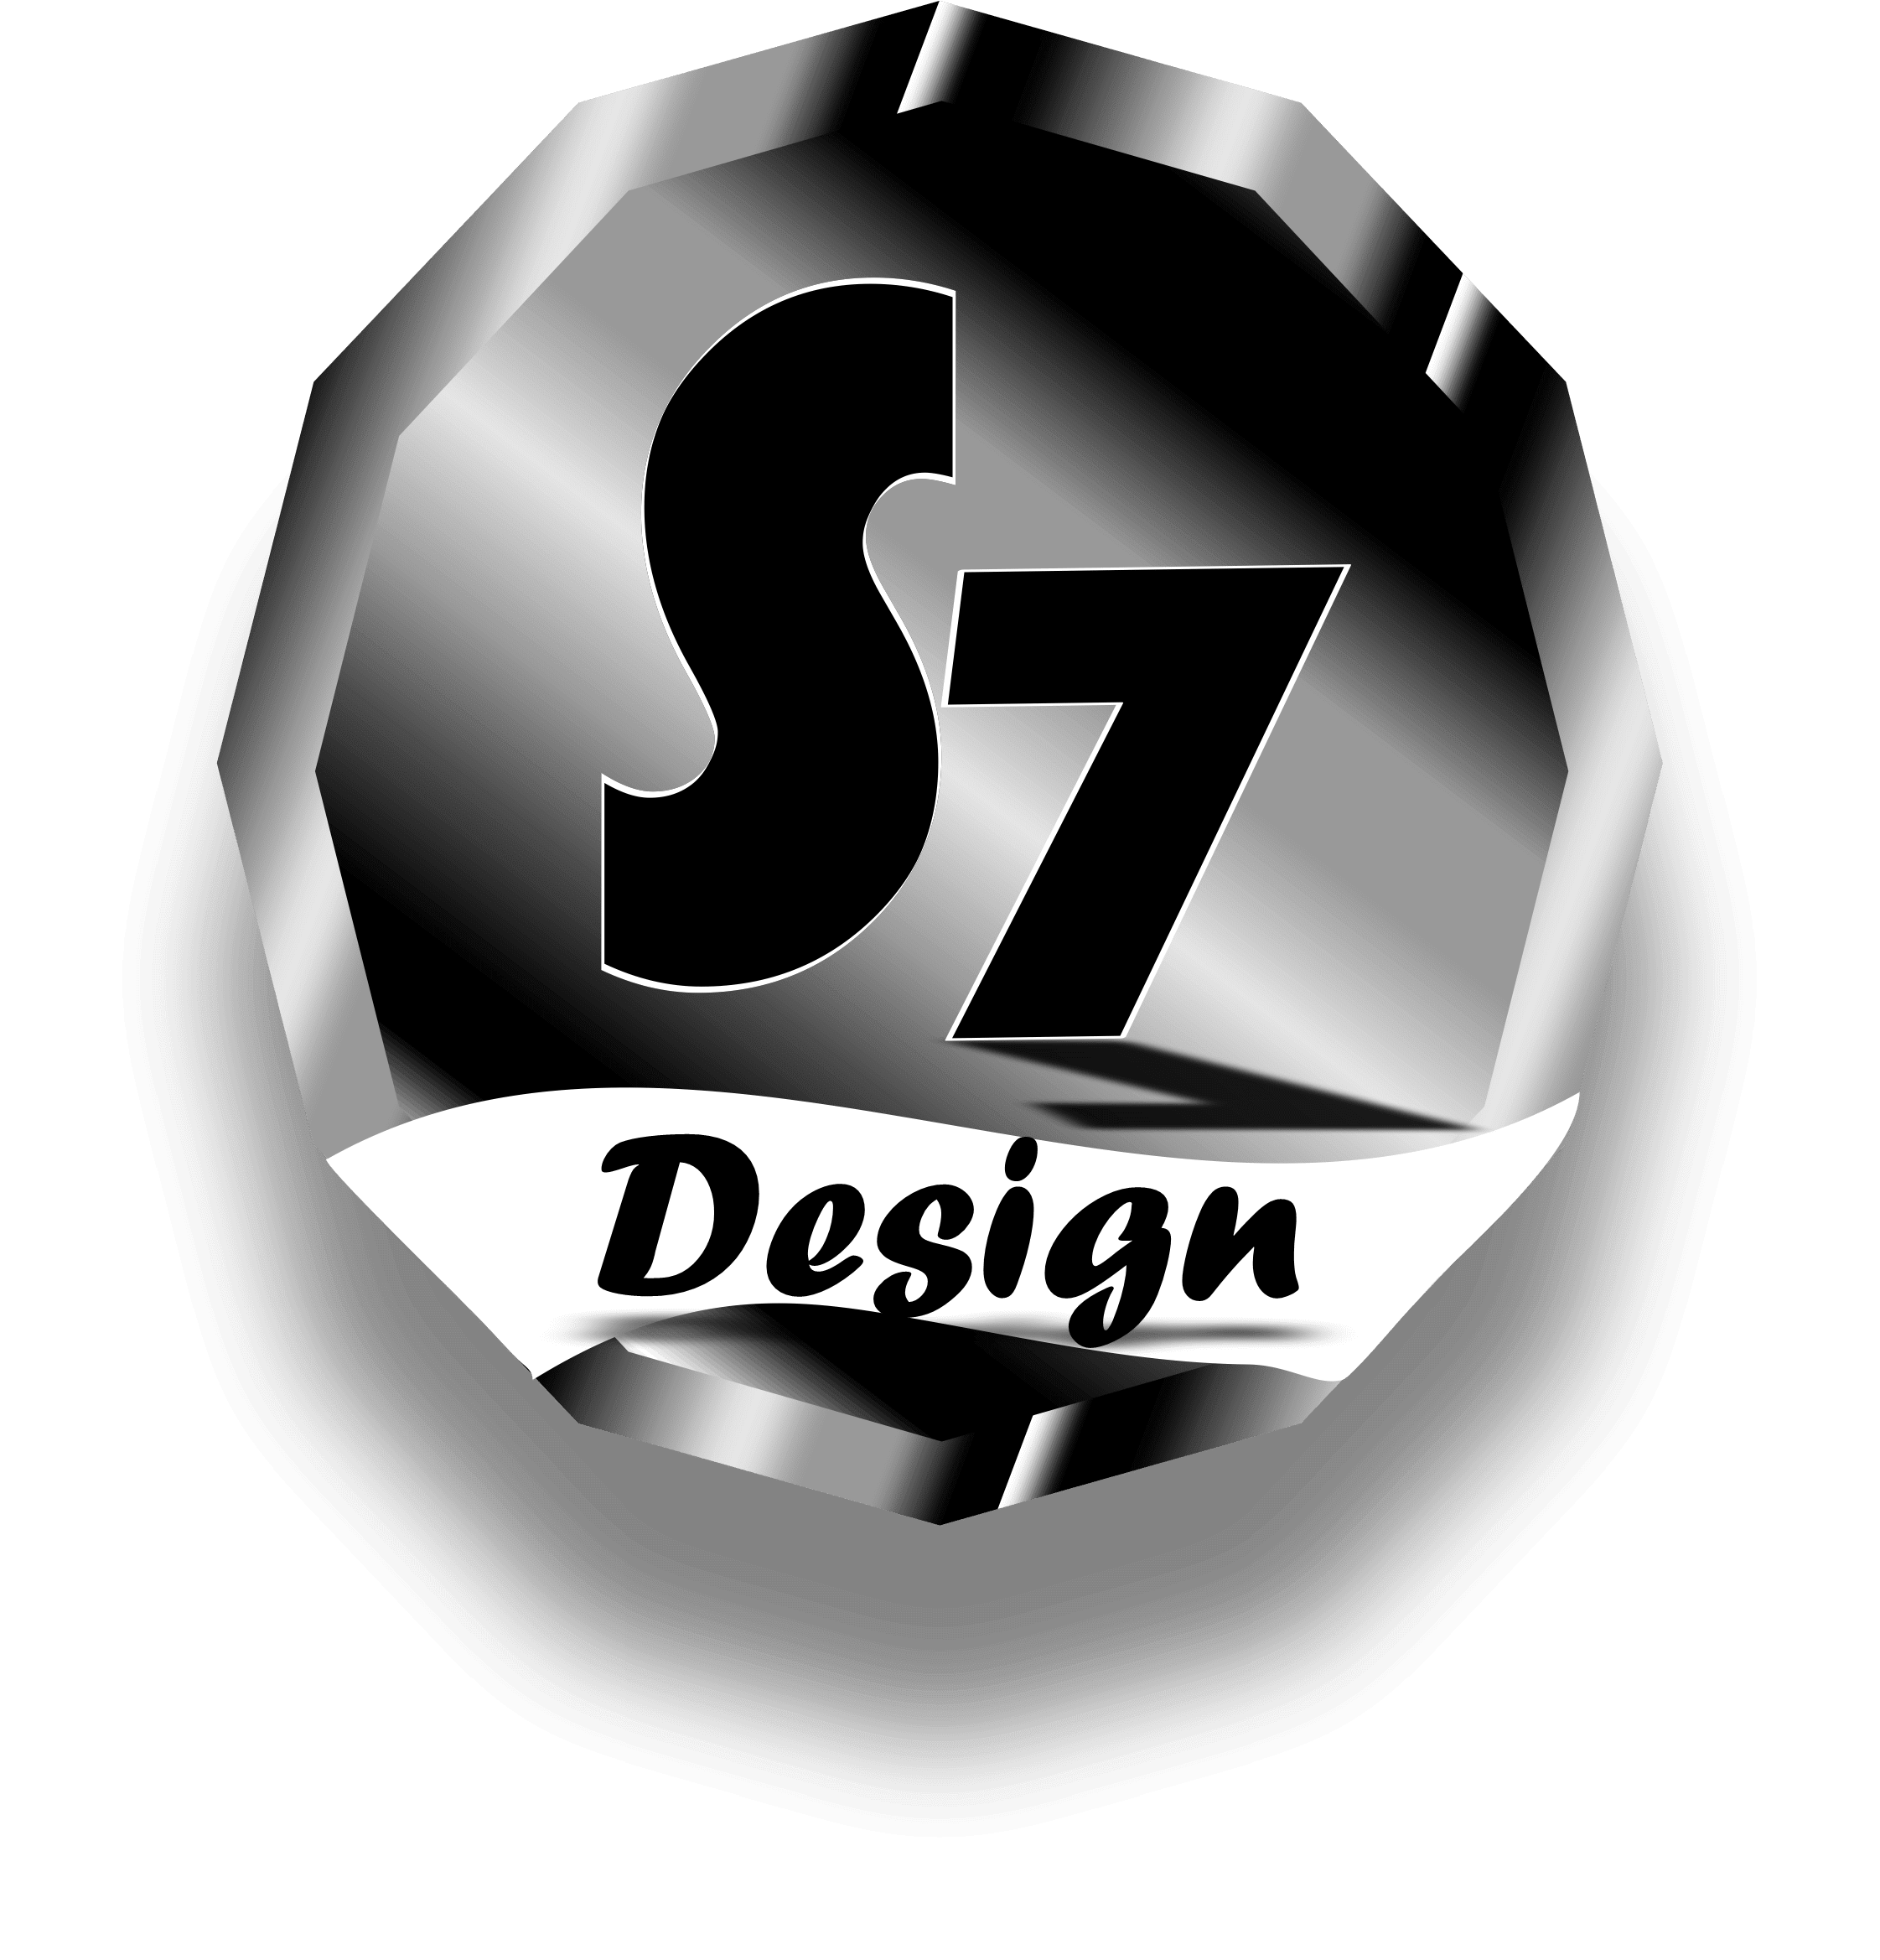 S7 Design